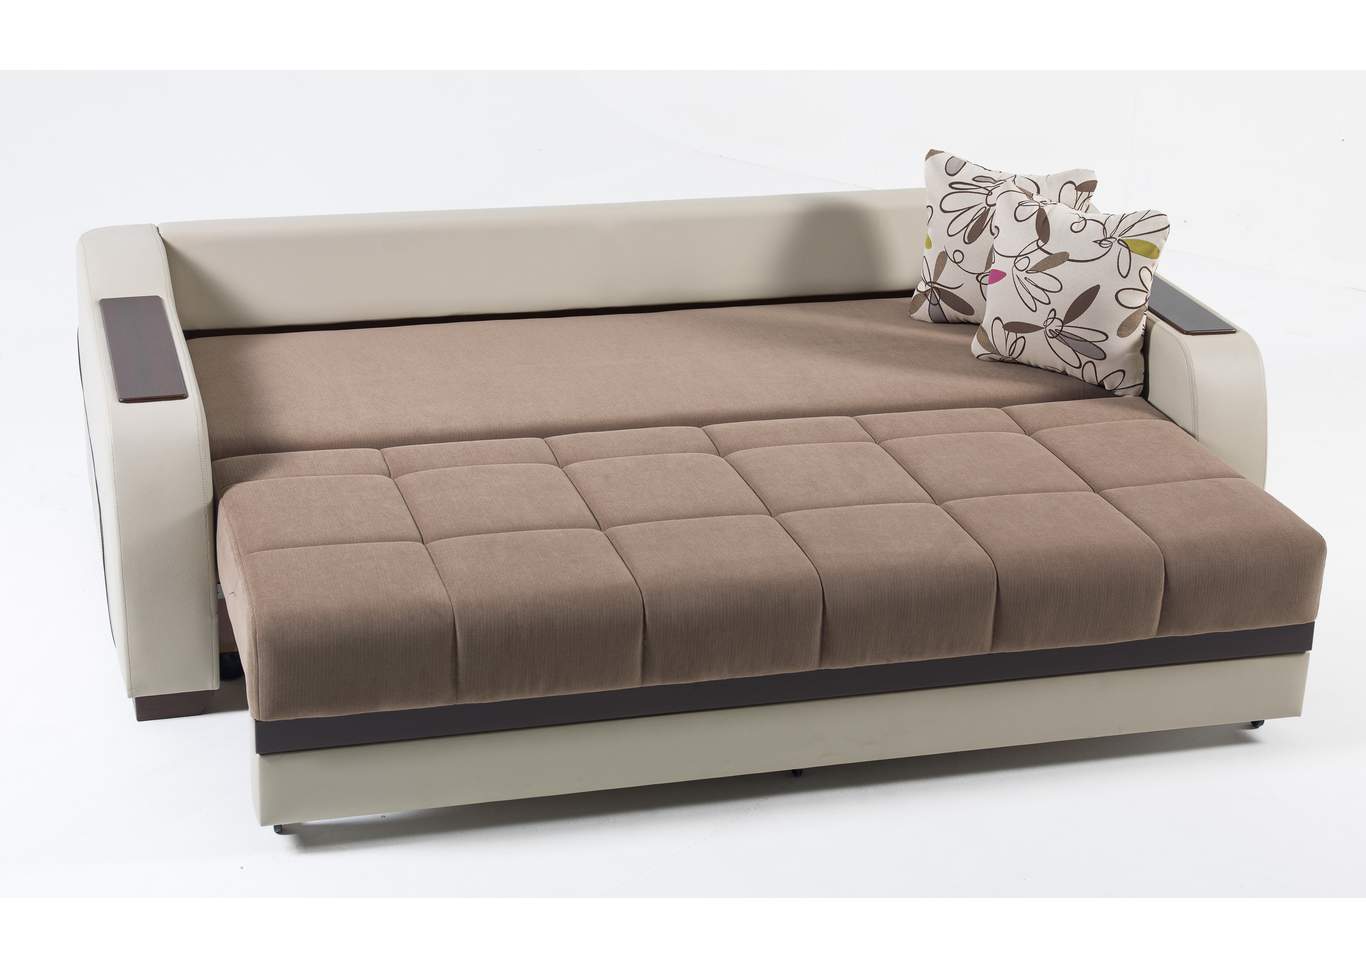 Ultra Optimum Brown 3 Seat Sleeper Sofa,Hudson Furniture & Bedding